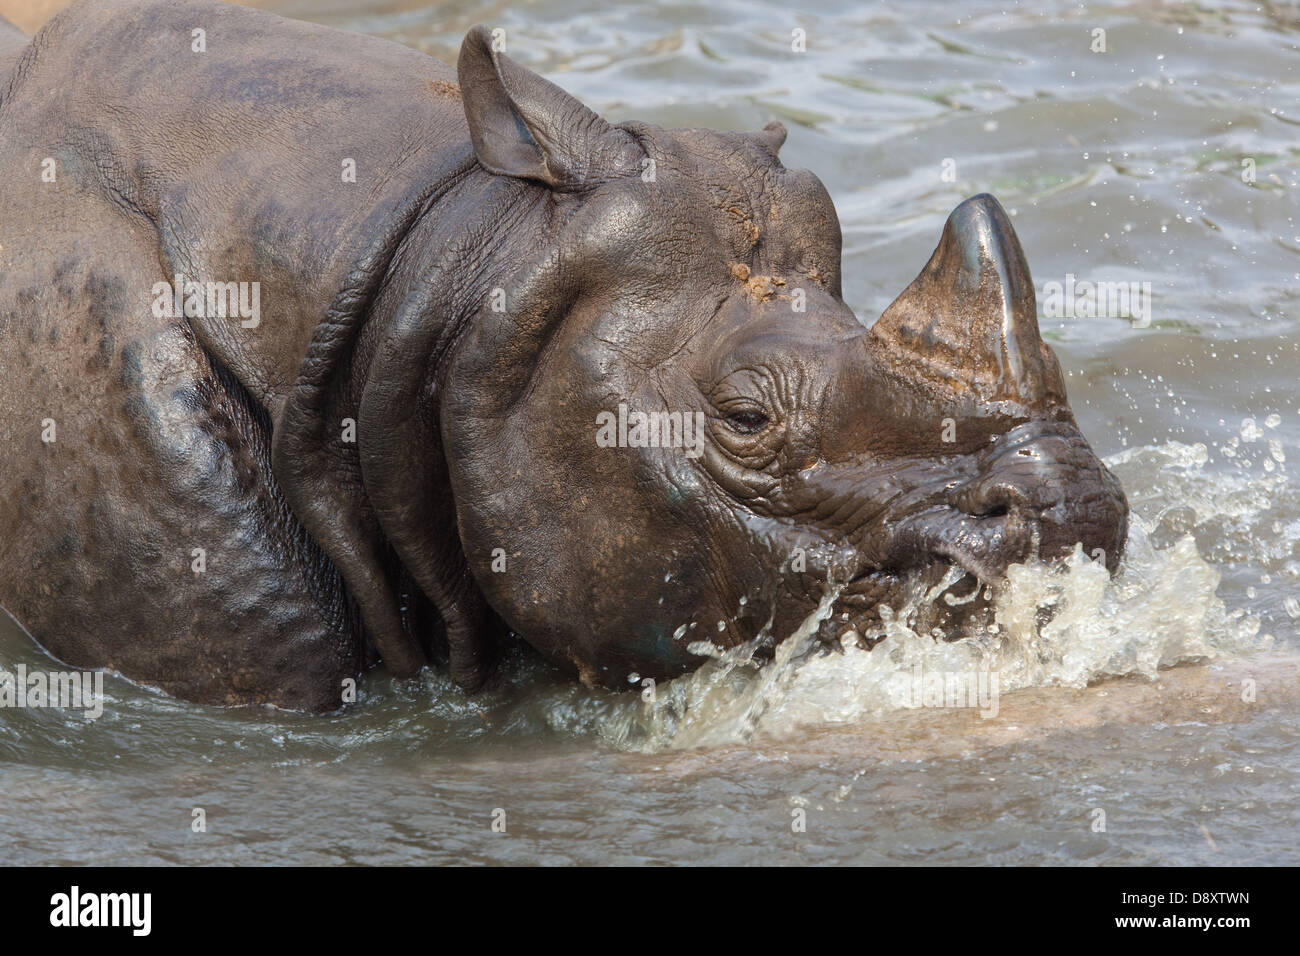 Maggiore uno-cornuto, Asiatica o il rinoceronte indiano (Rhinoceros unicornis). Godendo di un bagno nella piscina del contenitore, lo Zoo di centrale, Nepal. Foto Stock